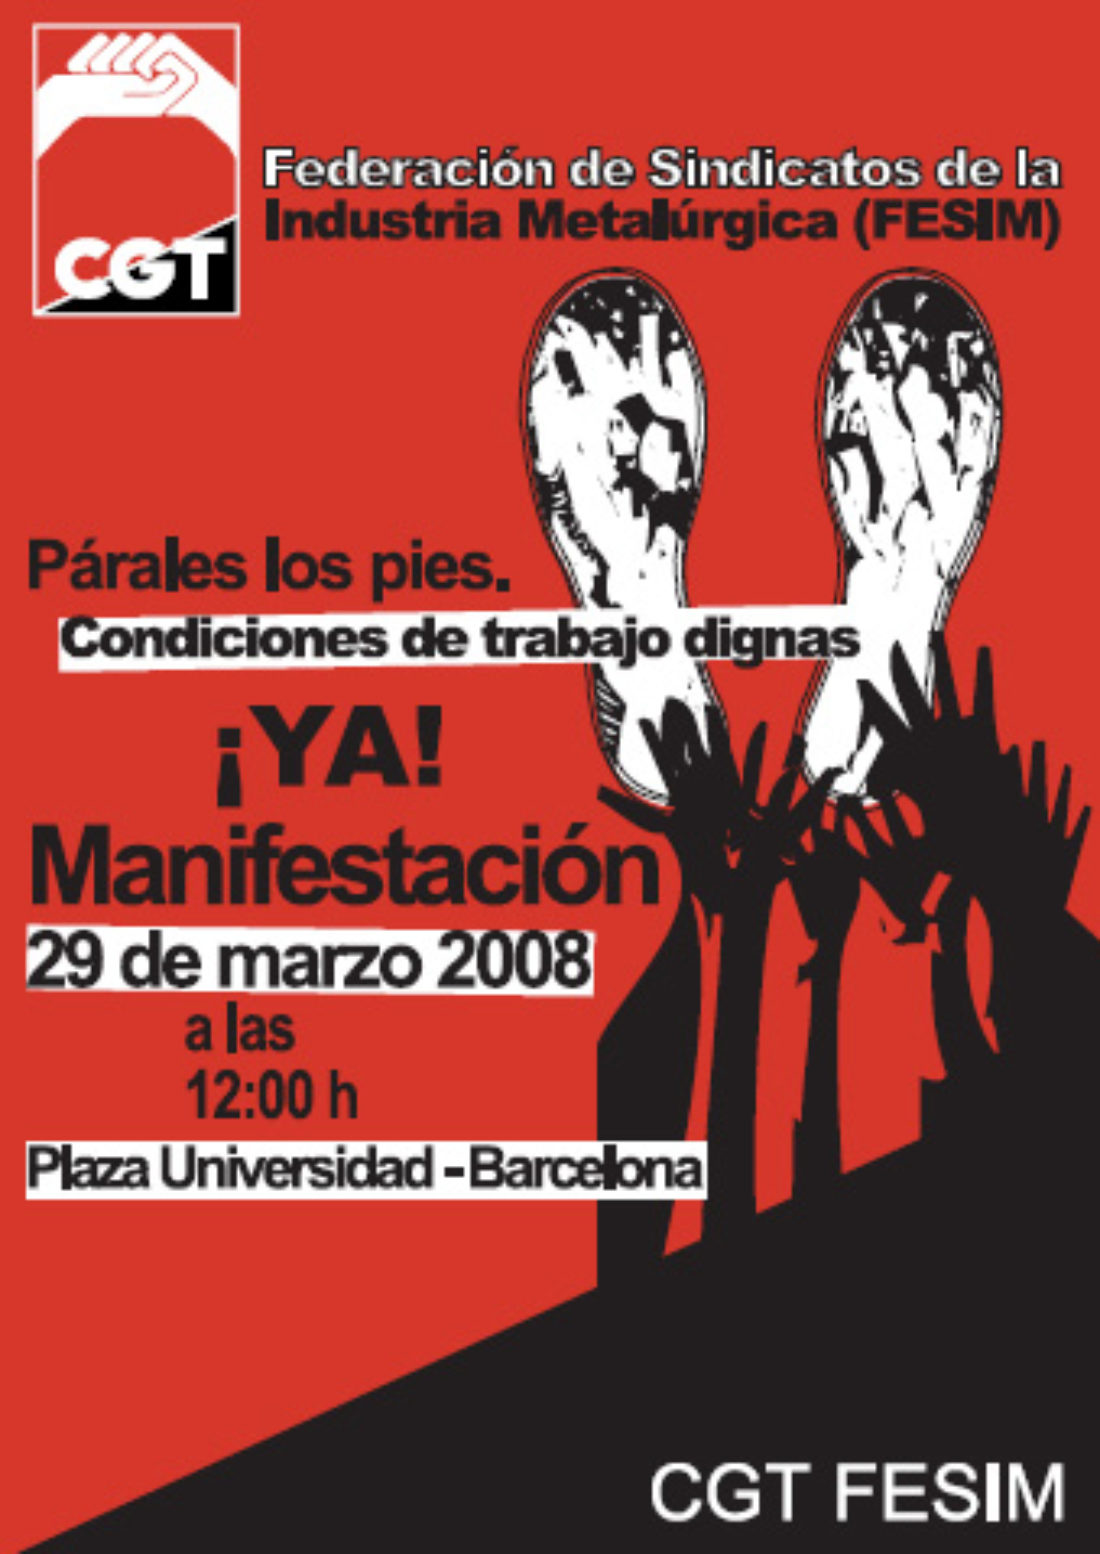 Sábado 29 de marzo, Barcelona : manifestación en defensa de unas condiciones de trabajo dignas. Contra el atropello y el chantaje de las empresas. Por nuestros derechos.